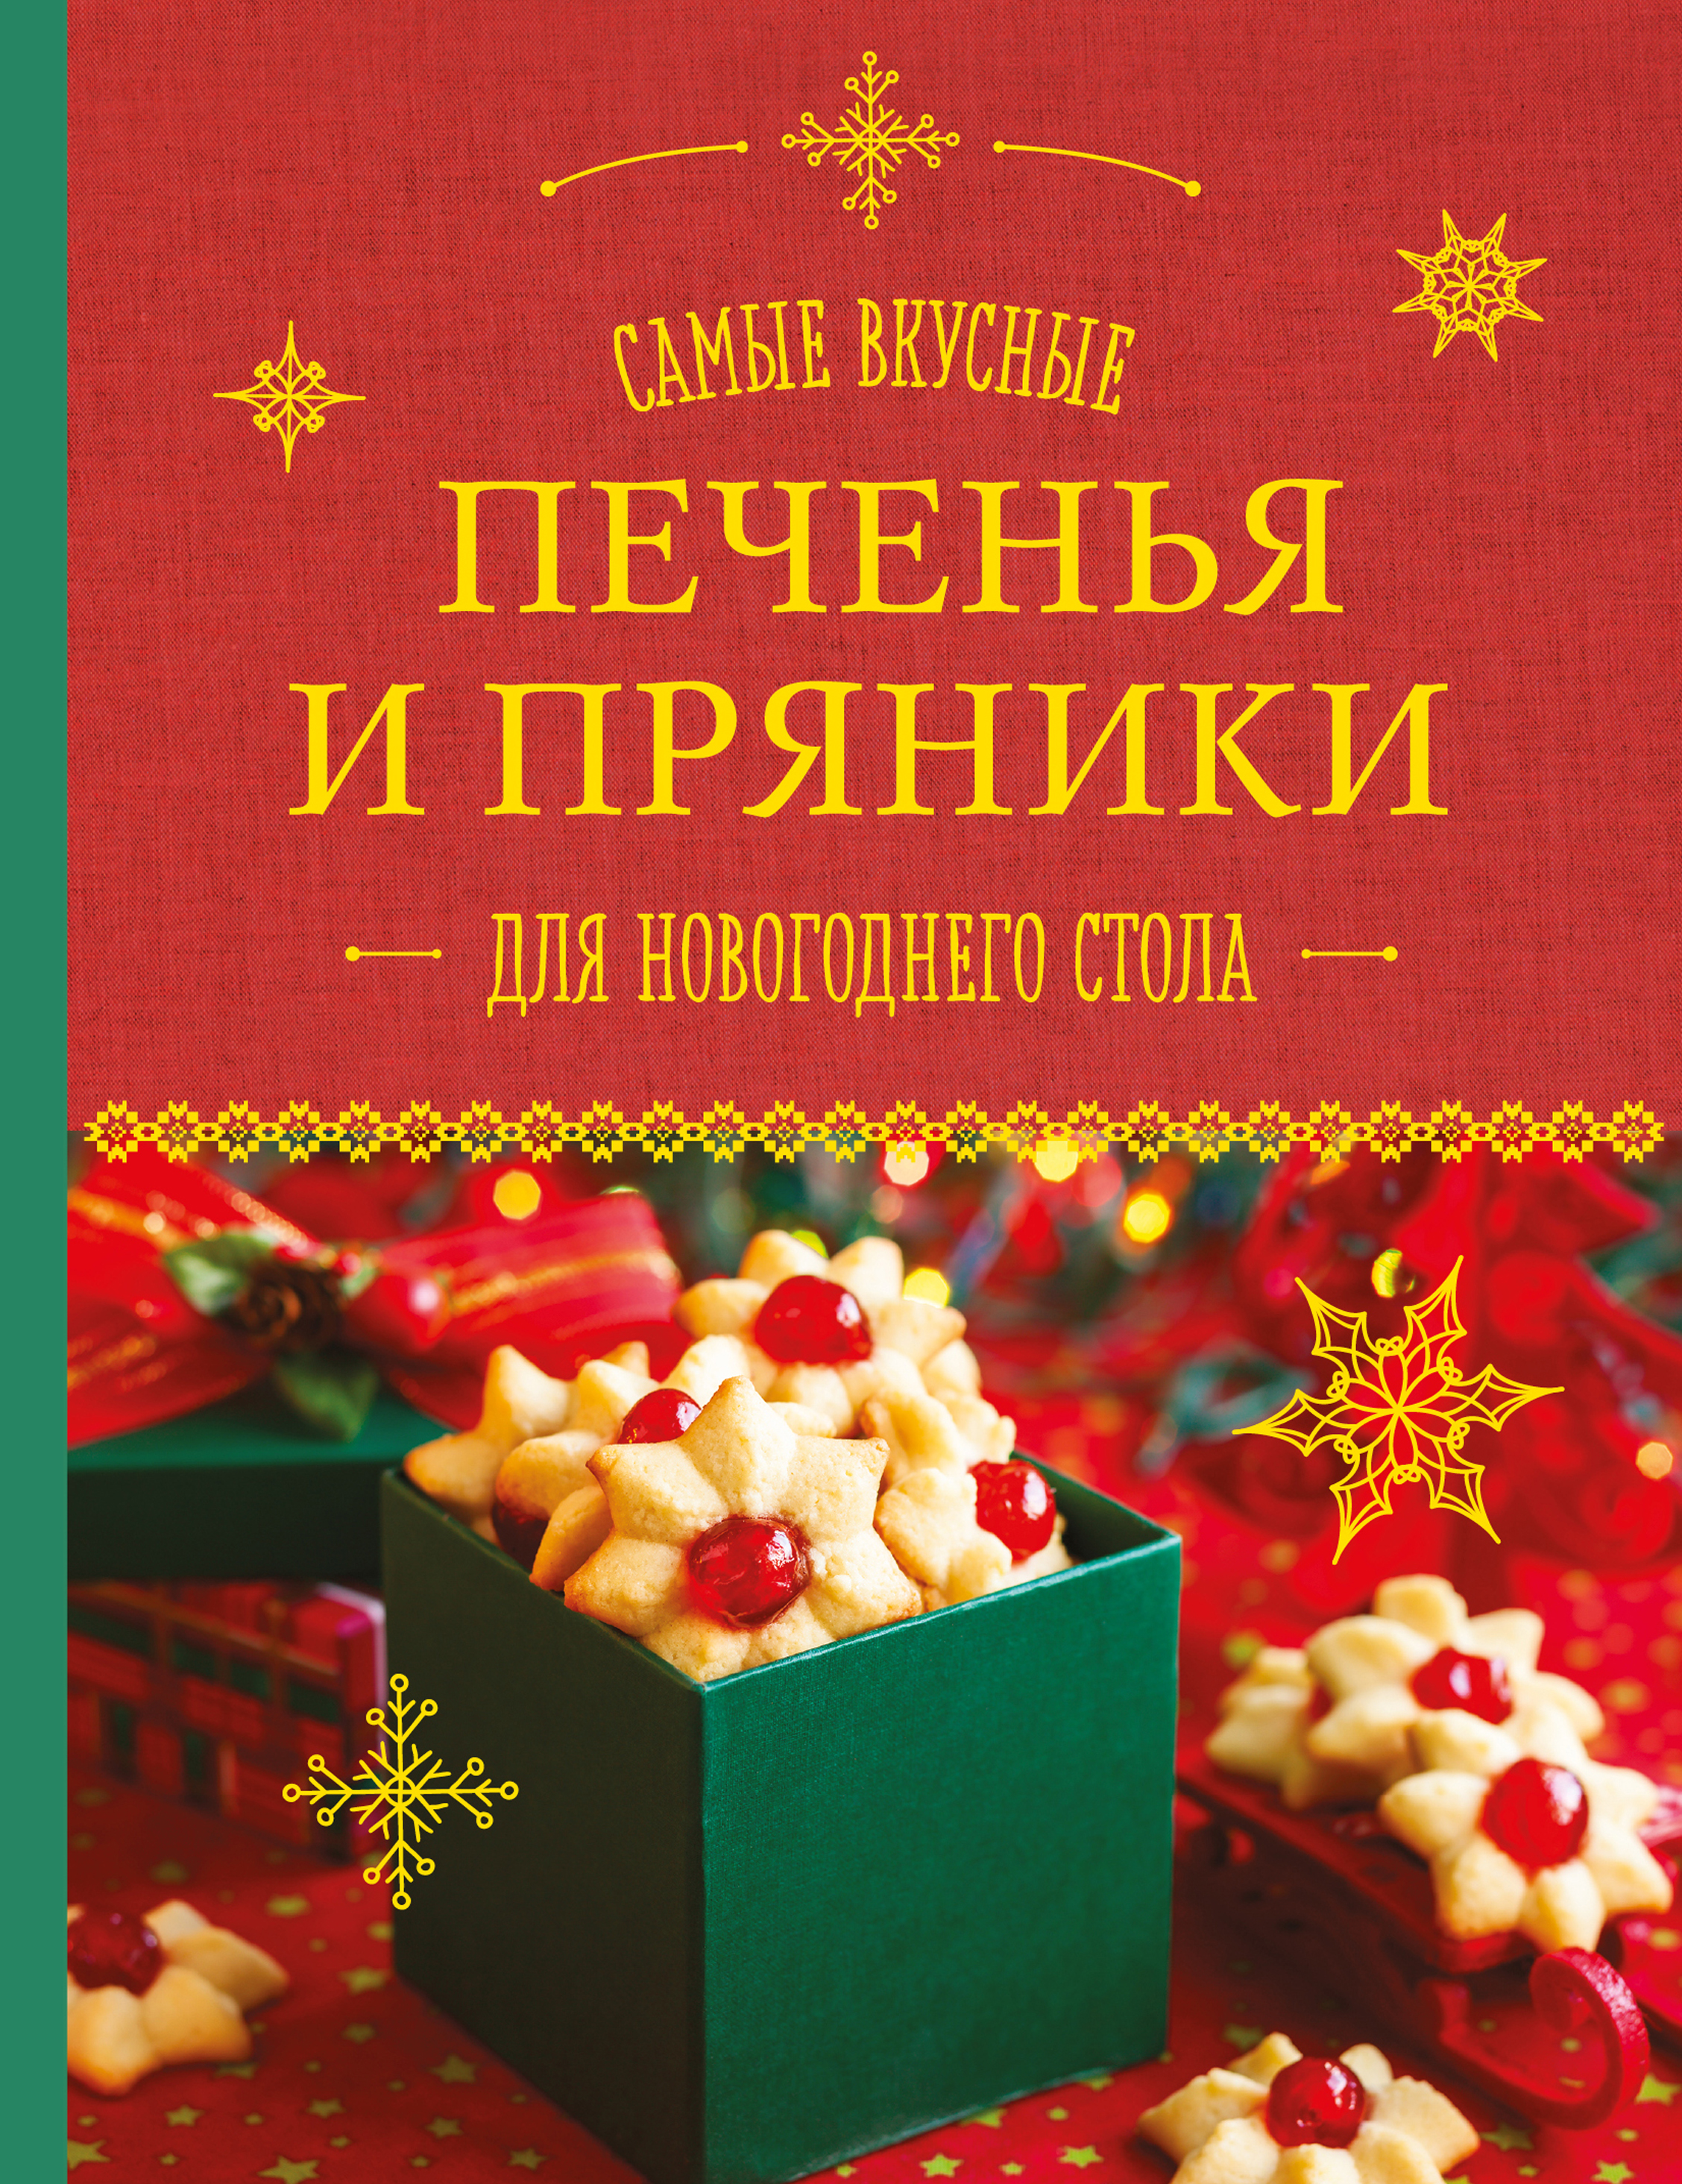 Самые вкусные печенья и пряники для новогоднего стола. Шаутидзе Л.Н., Серебрякова Н.Э.